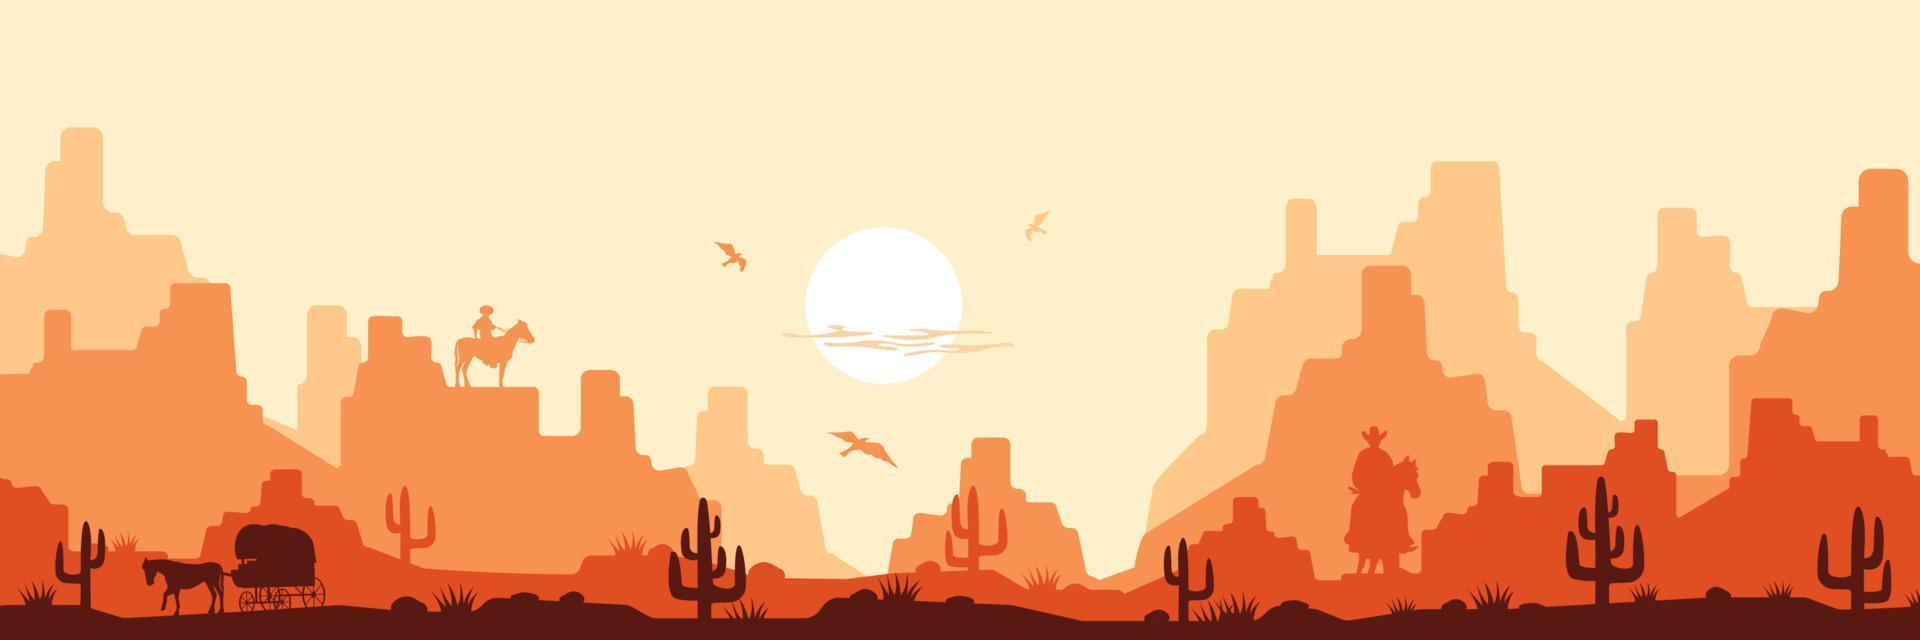 heißer Savannen-Wild-West-Hintergrund. tagsüber gelbe hitze mit silhouetten kakteen und cowboys reiten orange berge im dunst. vektor